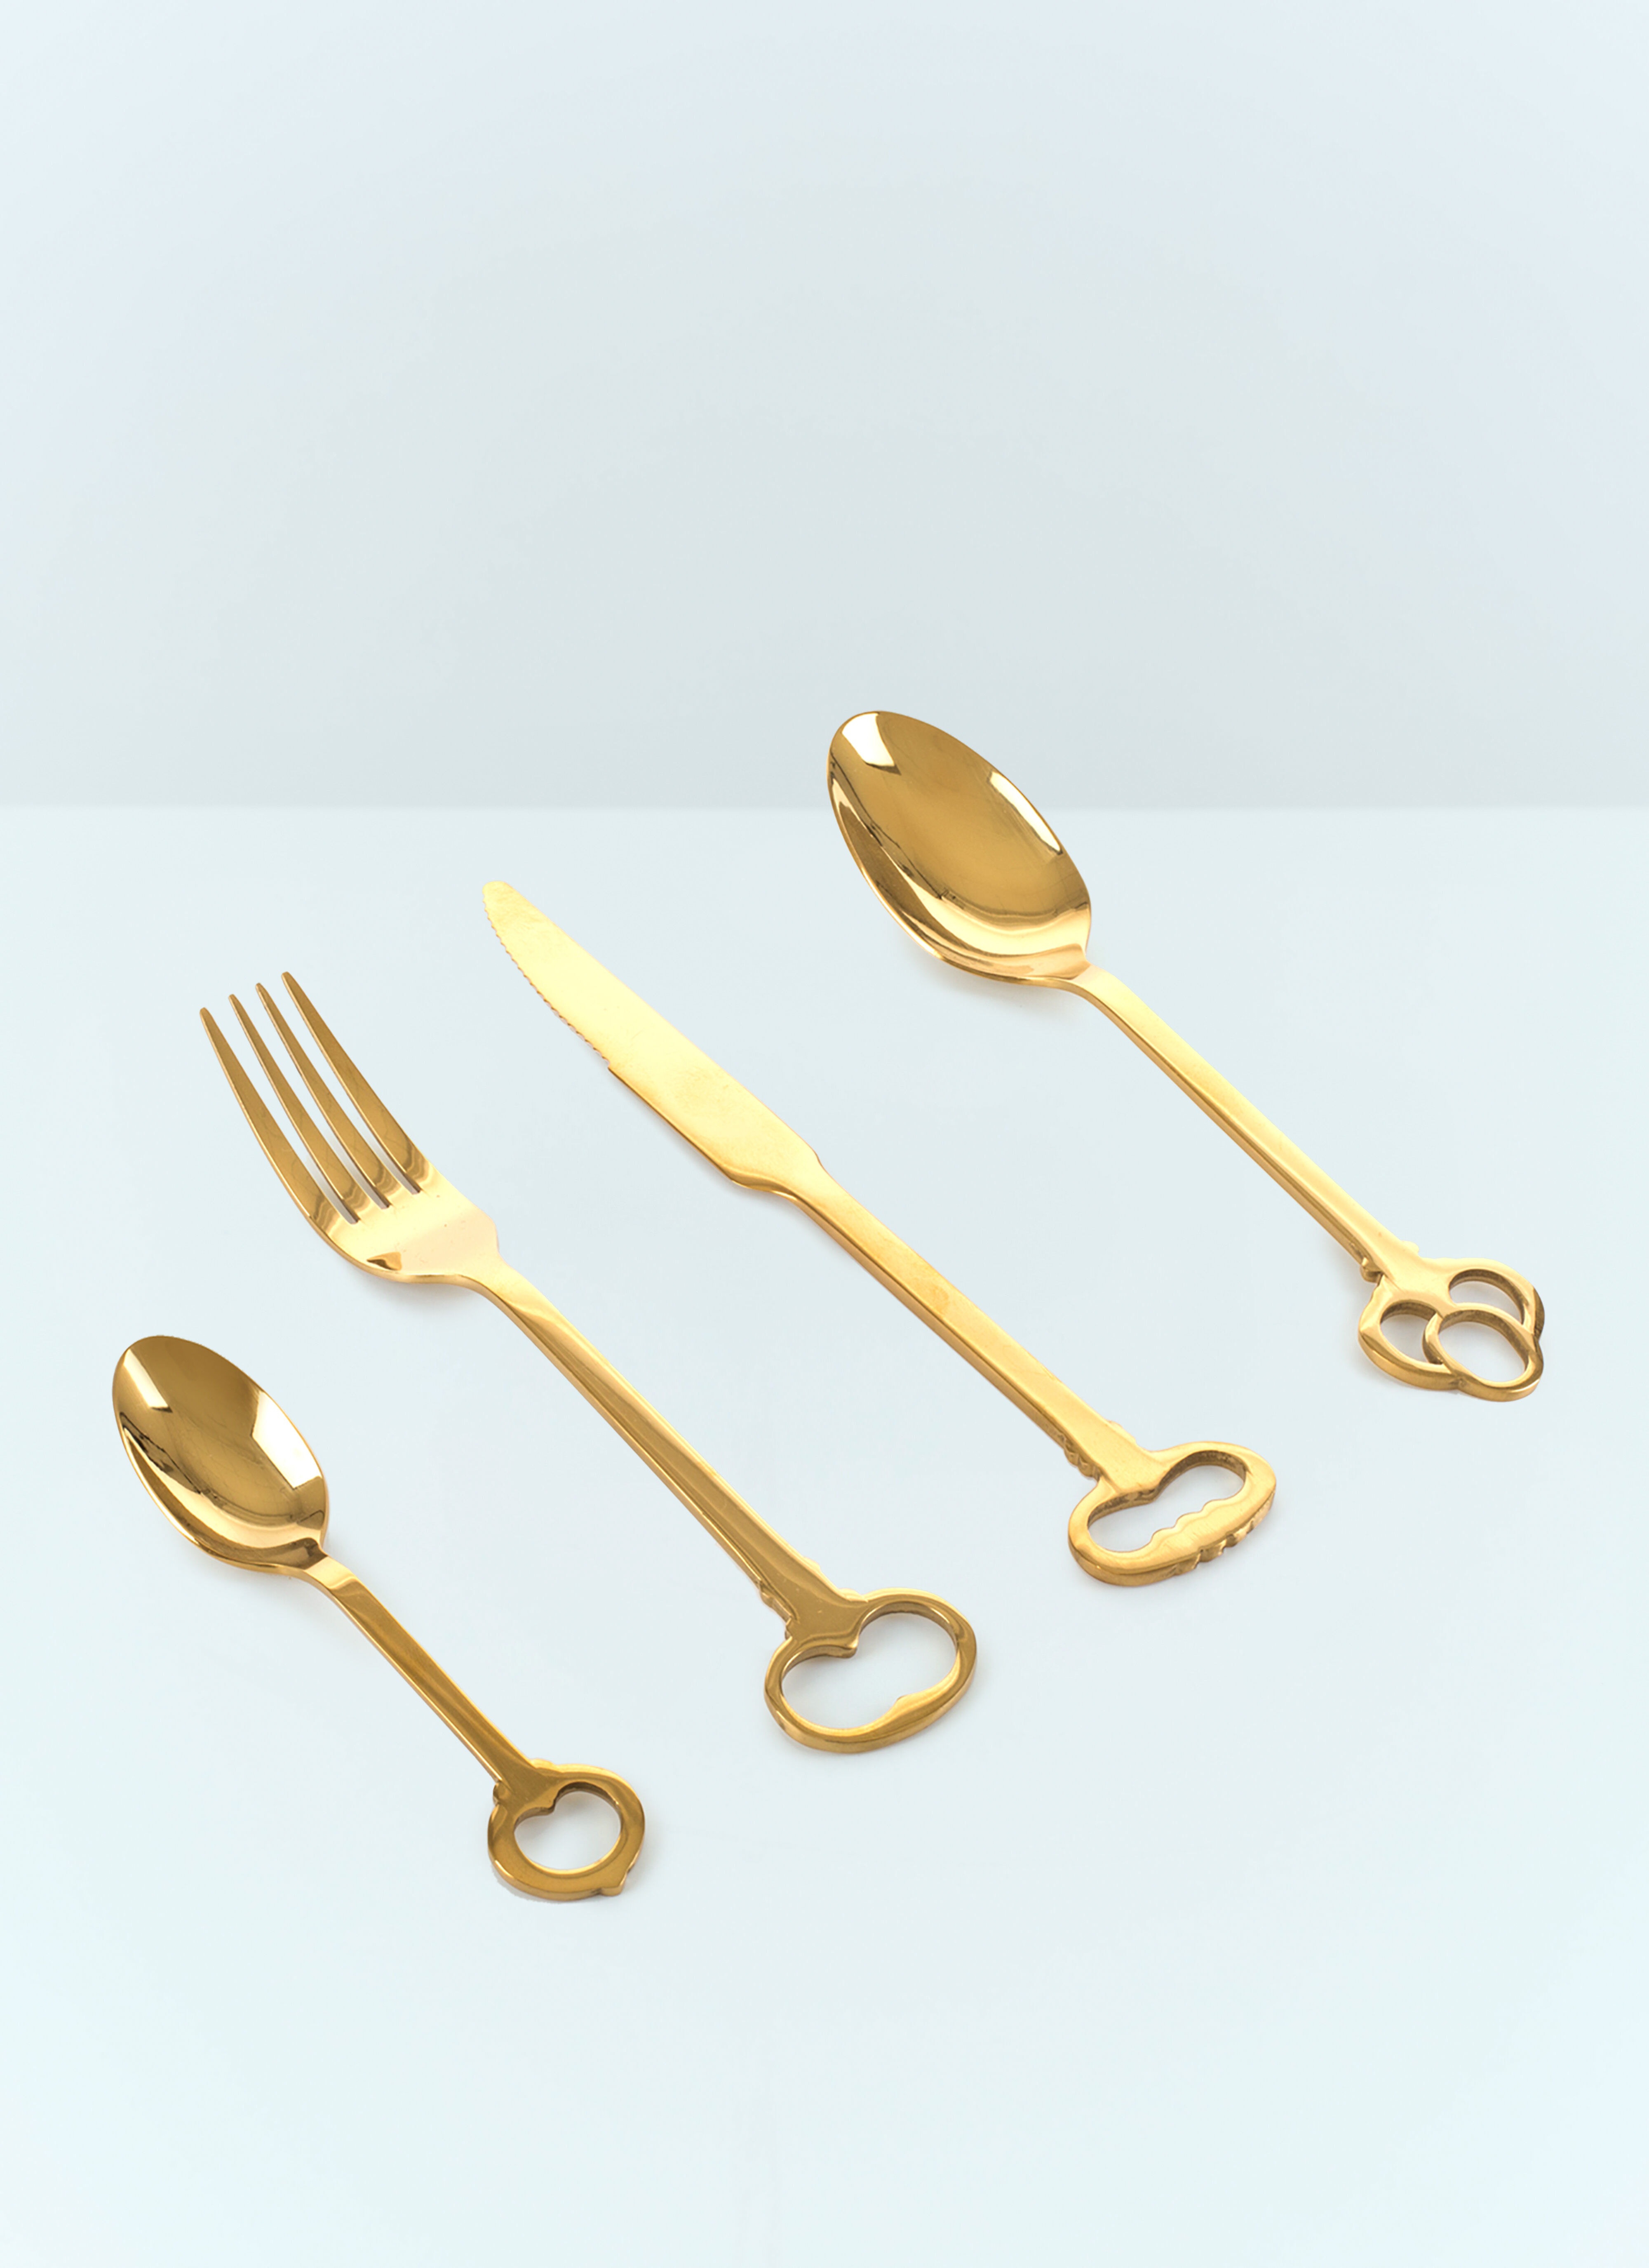 Ichendorf Milano Keytlery Cutlery Set Clear wps0691235